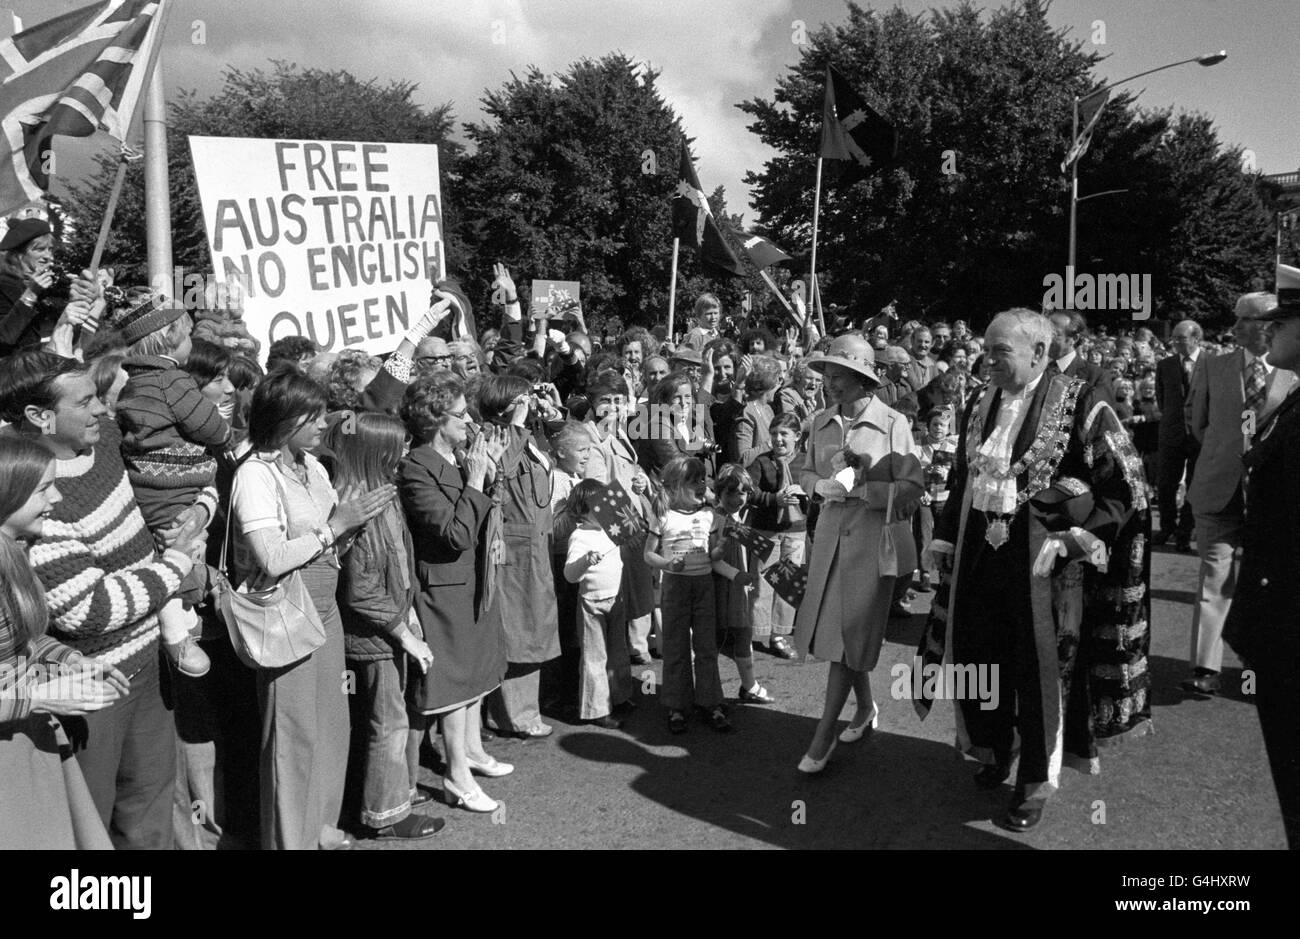 Les Républicains ont un écriteau dissident alors que le peuple salue la reine Elizabeth II avec des applaudissements et des sourires lors de sa promenade à Hobart, en Tasmanie. Avec la Reine, le maire de Hobart, Alderman Doug Plaister. Banque D'Images